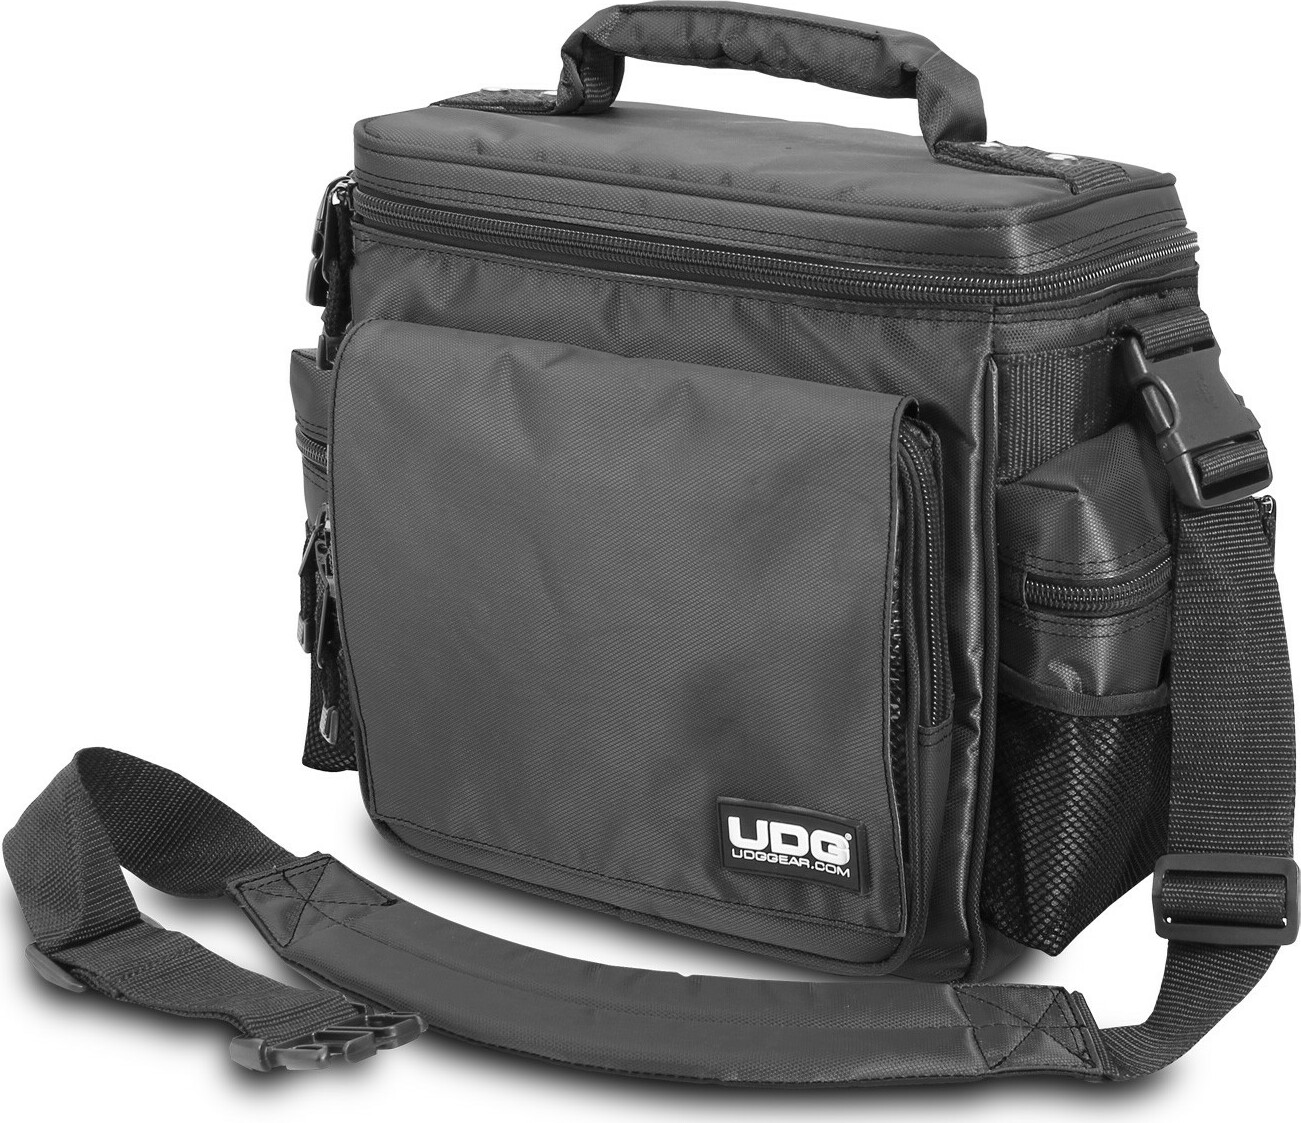 Udg Ultimate Slingbag Black Mk2 (without Cd Wallet 24) - Sac Transport Trolley Dj - Main picture